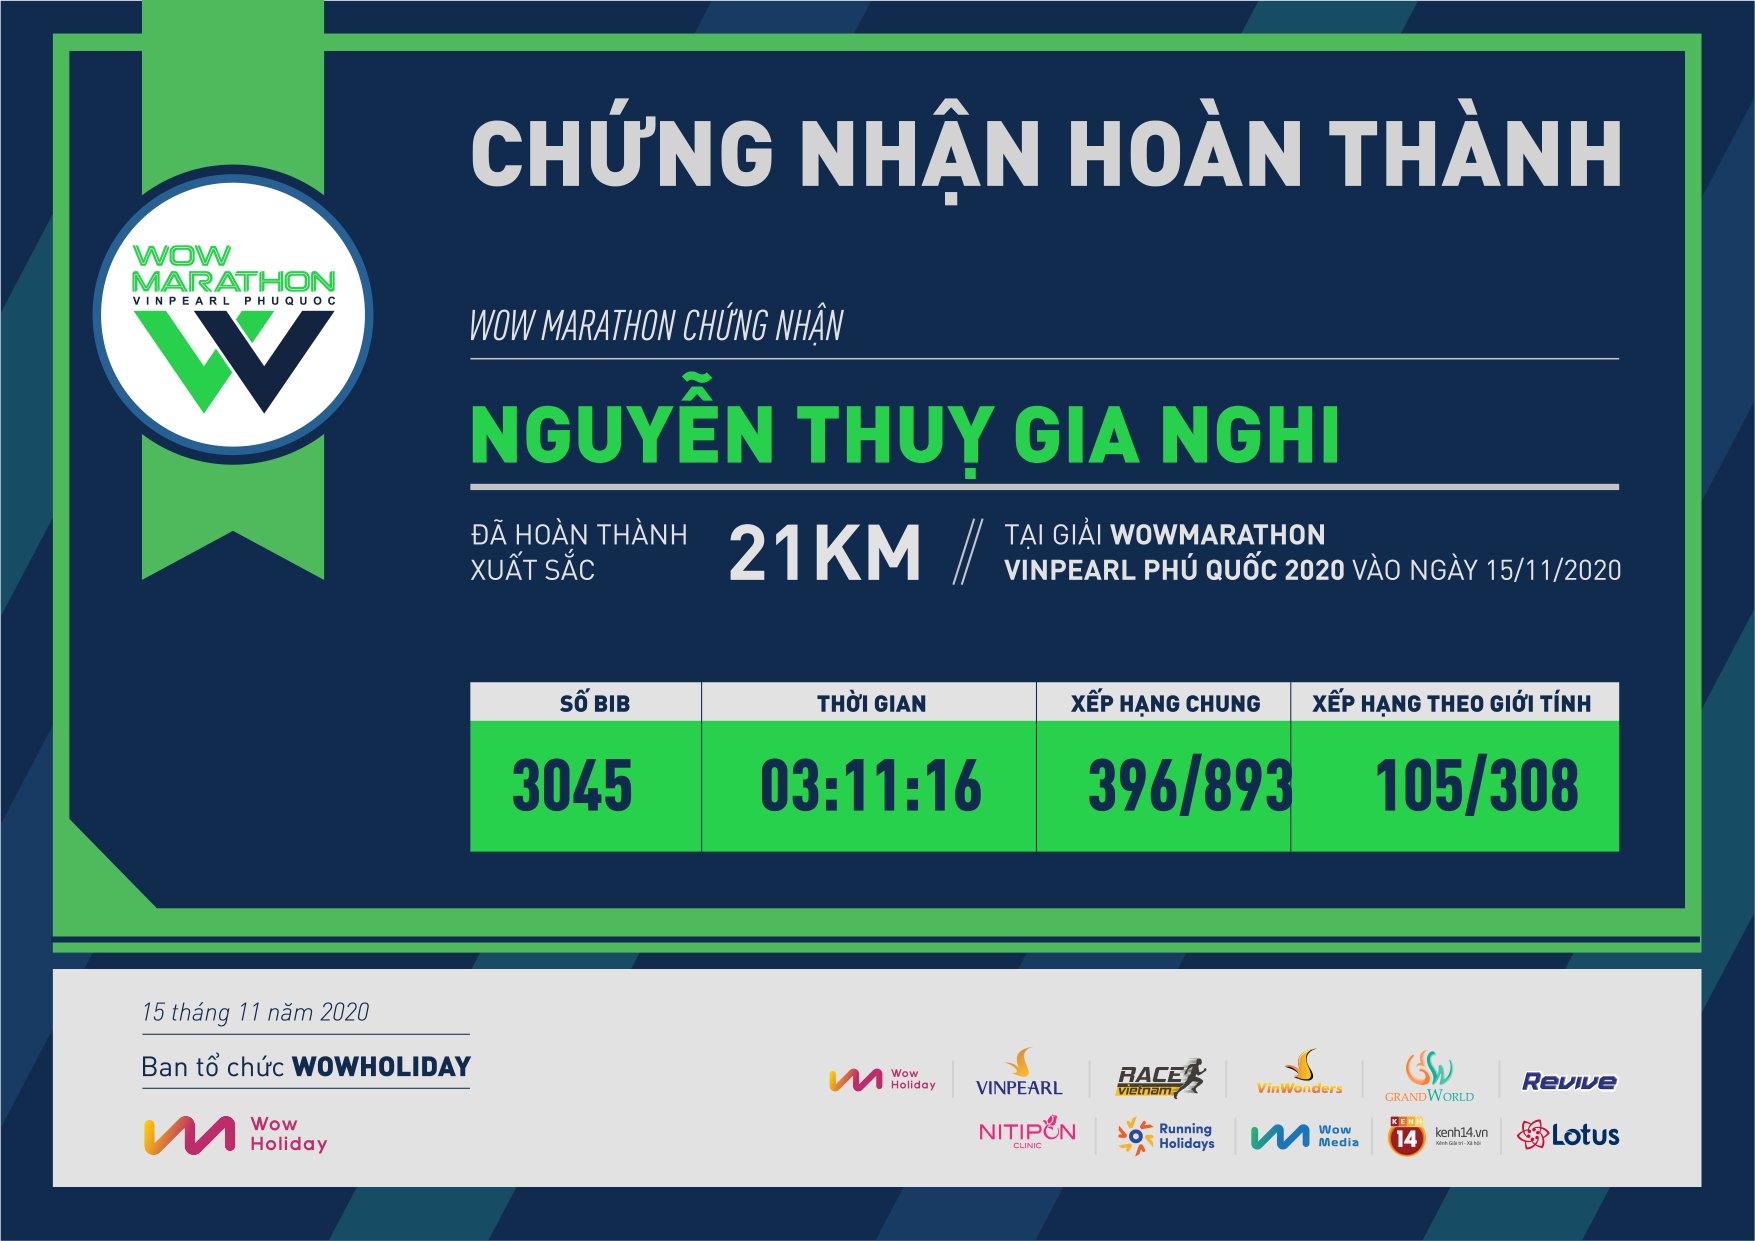 3045 - Nguyễn Thuỵ Gia Nghi